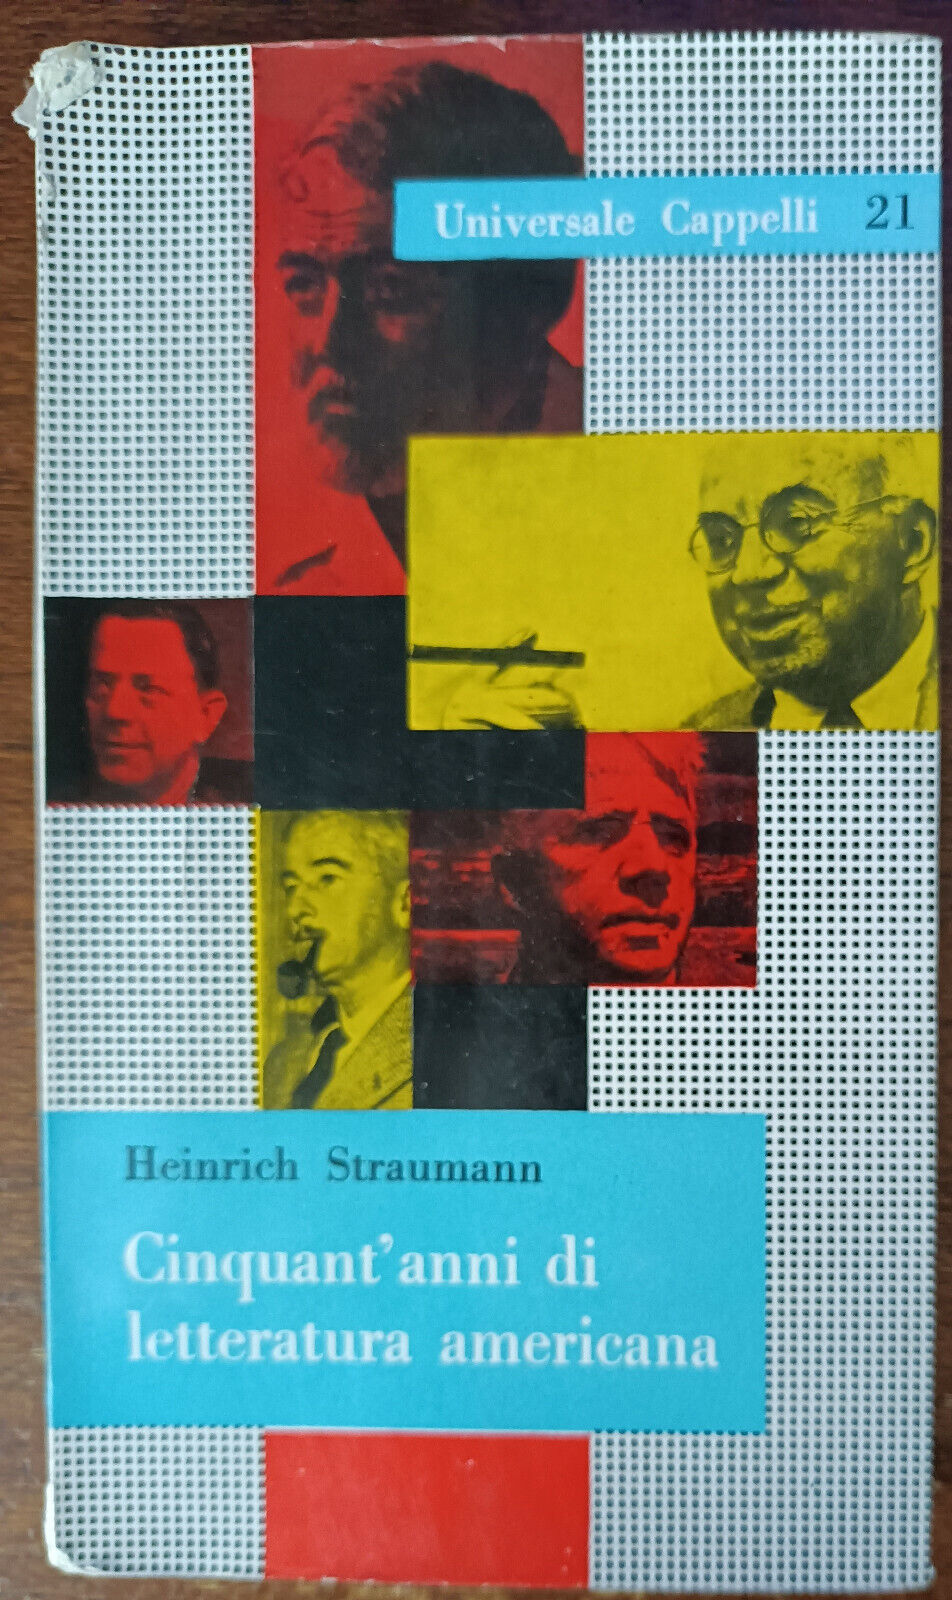 Cinquant'anni di letteratura americana - Heinrich Straumann - Cappelli, 1958 - A